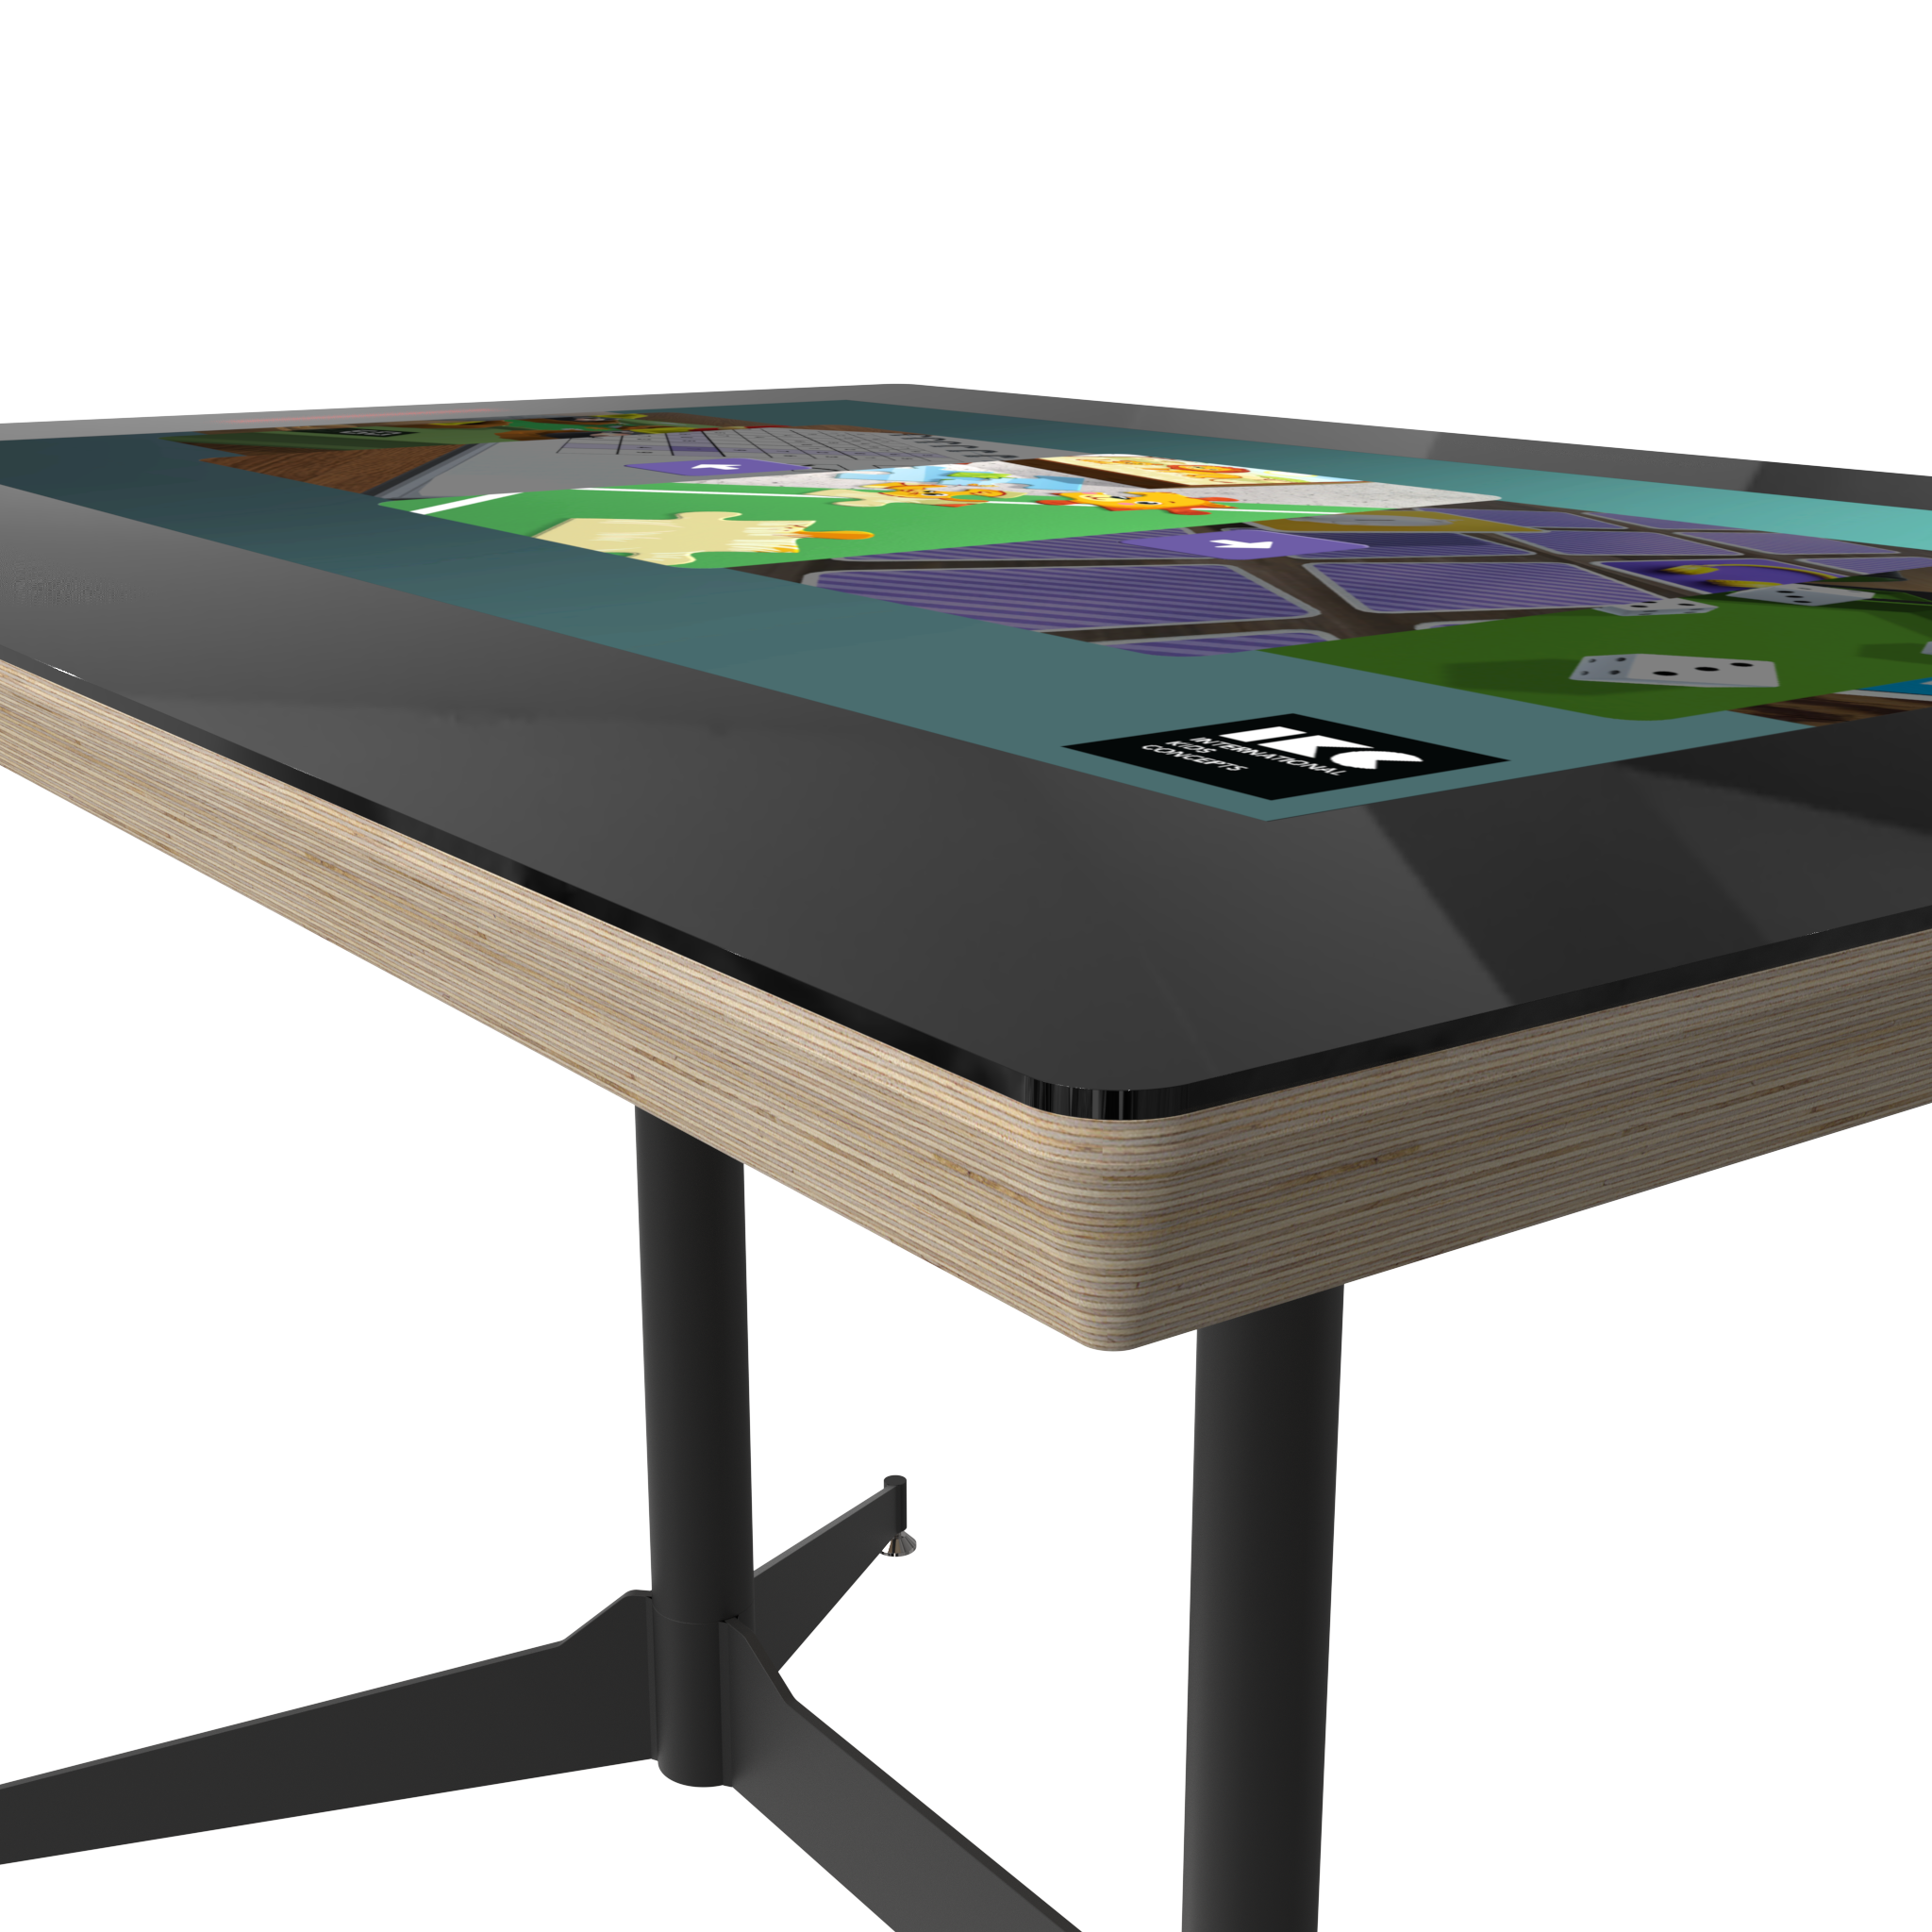 Ein interaktiver Spieltisch für die ganze Familie, erhältlich in 2 Versionen